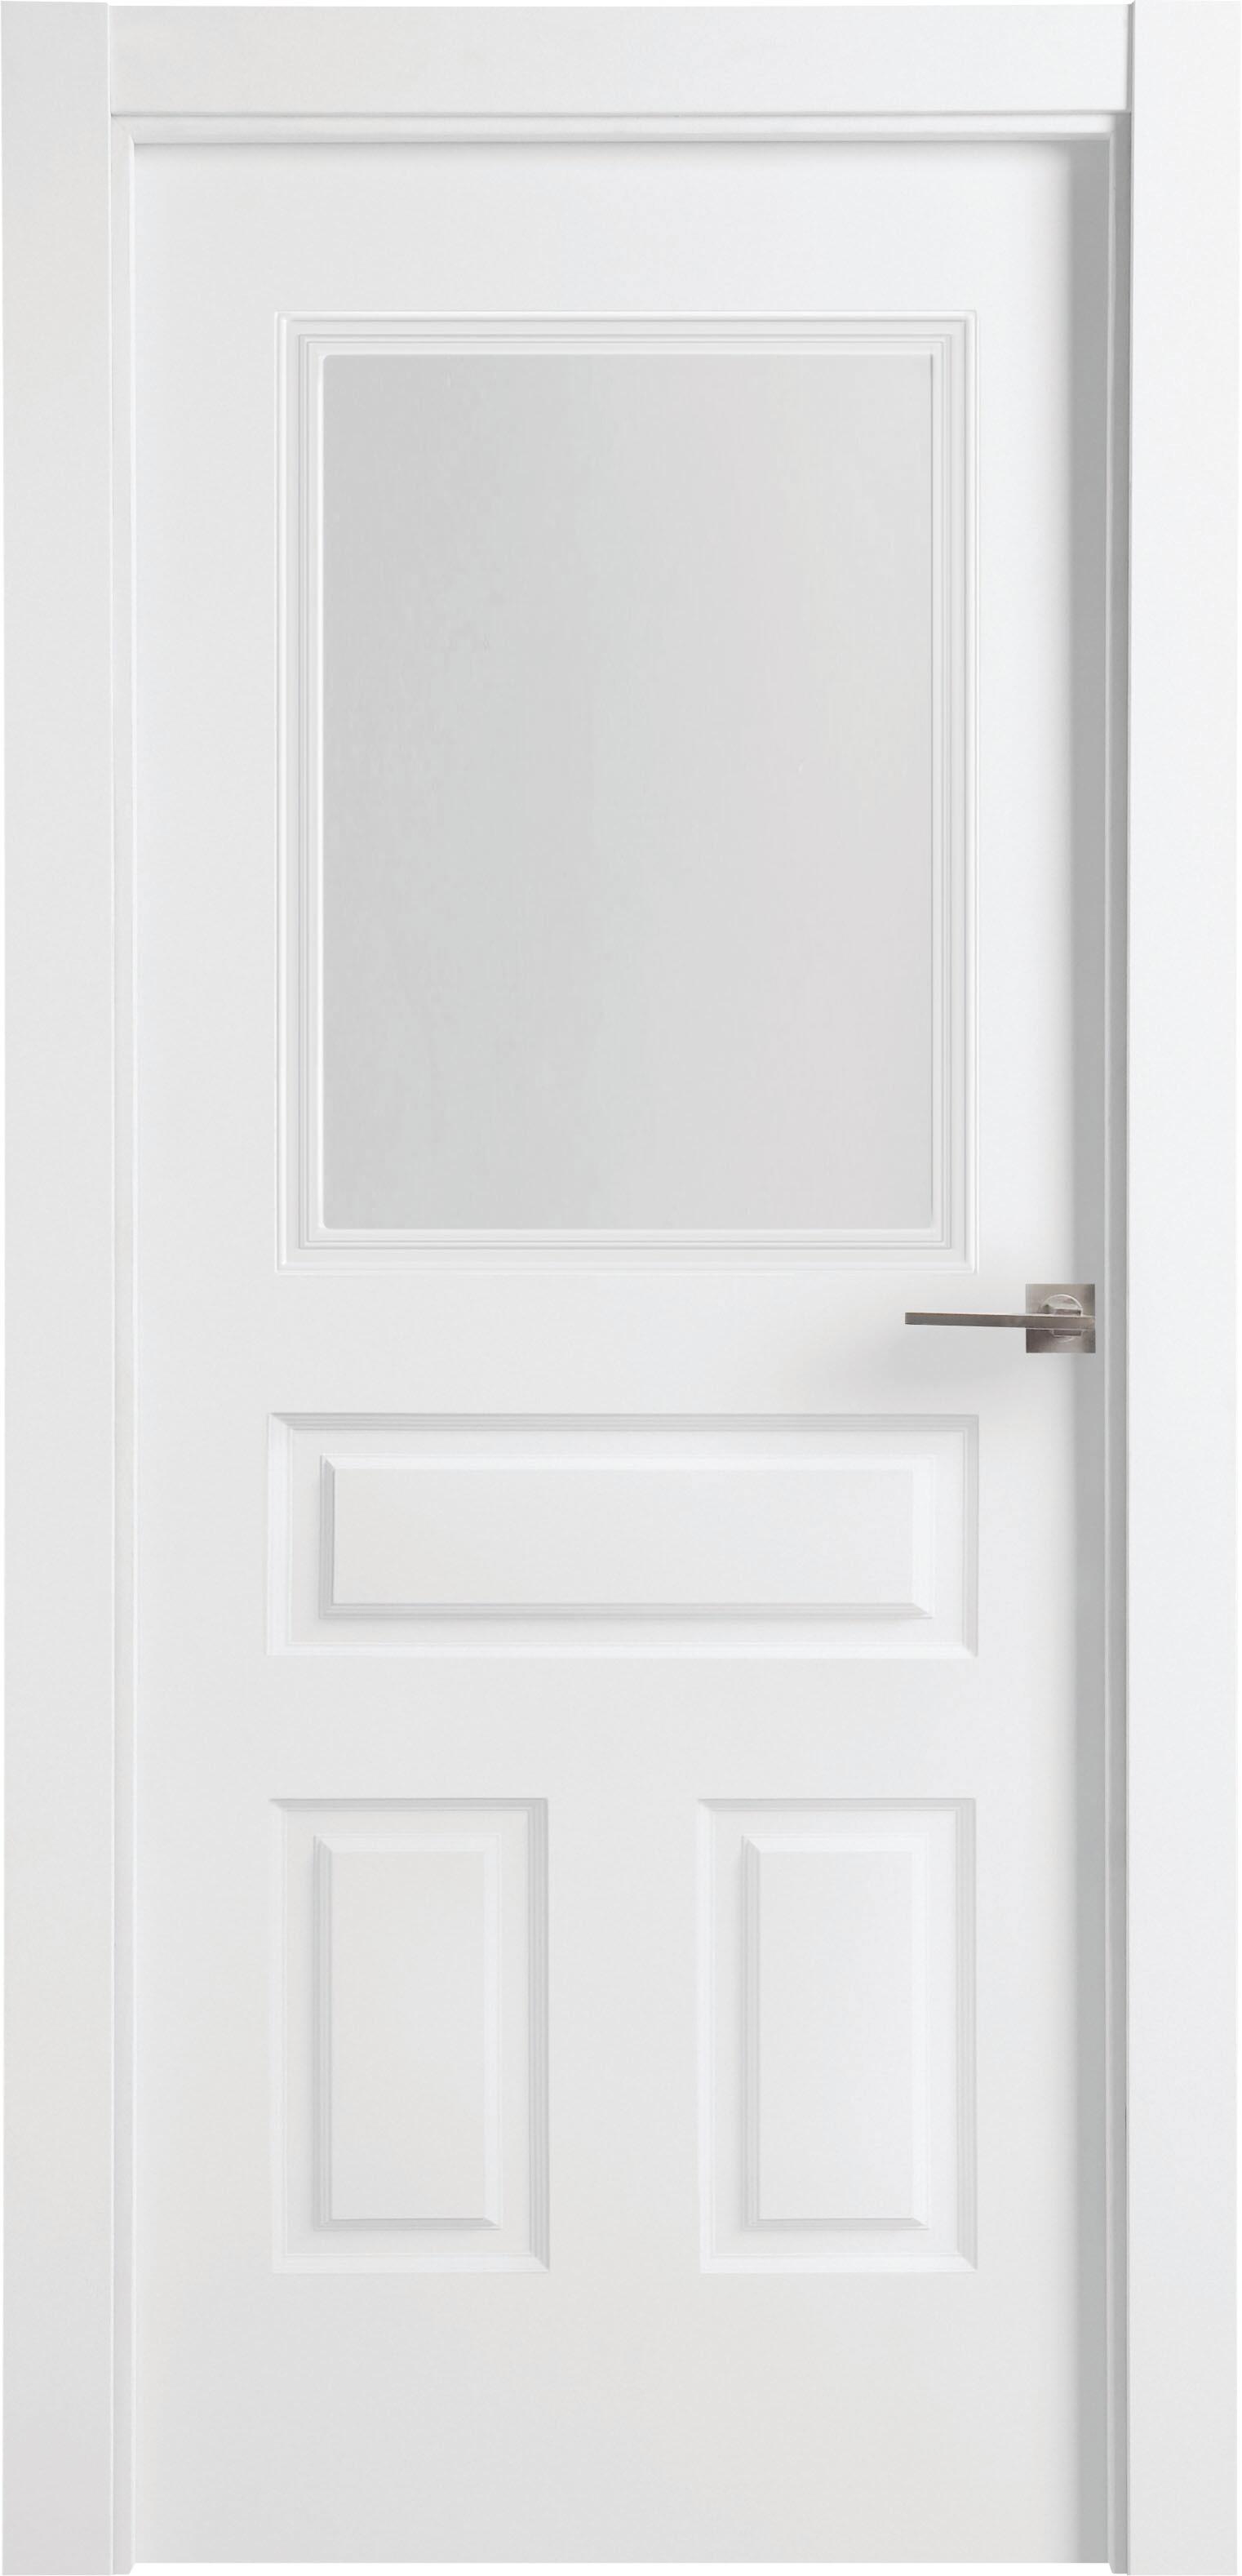 Puerta indiana plus blanco apertura izquierda con cristal 11x72,5cm